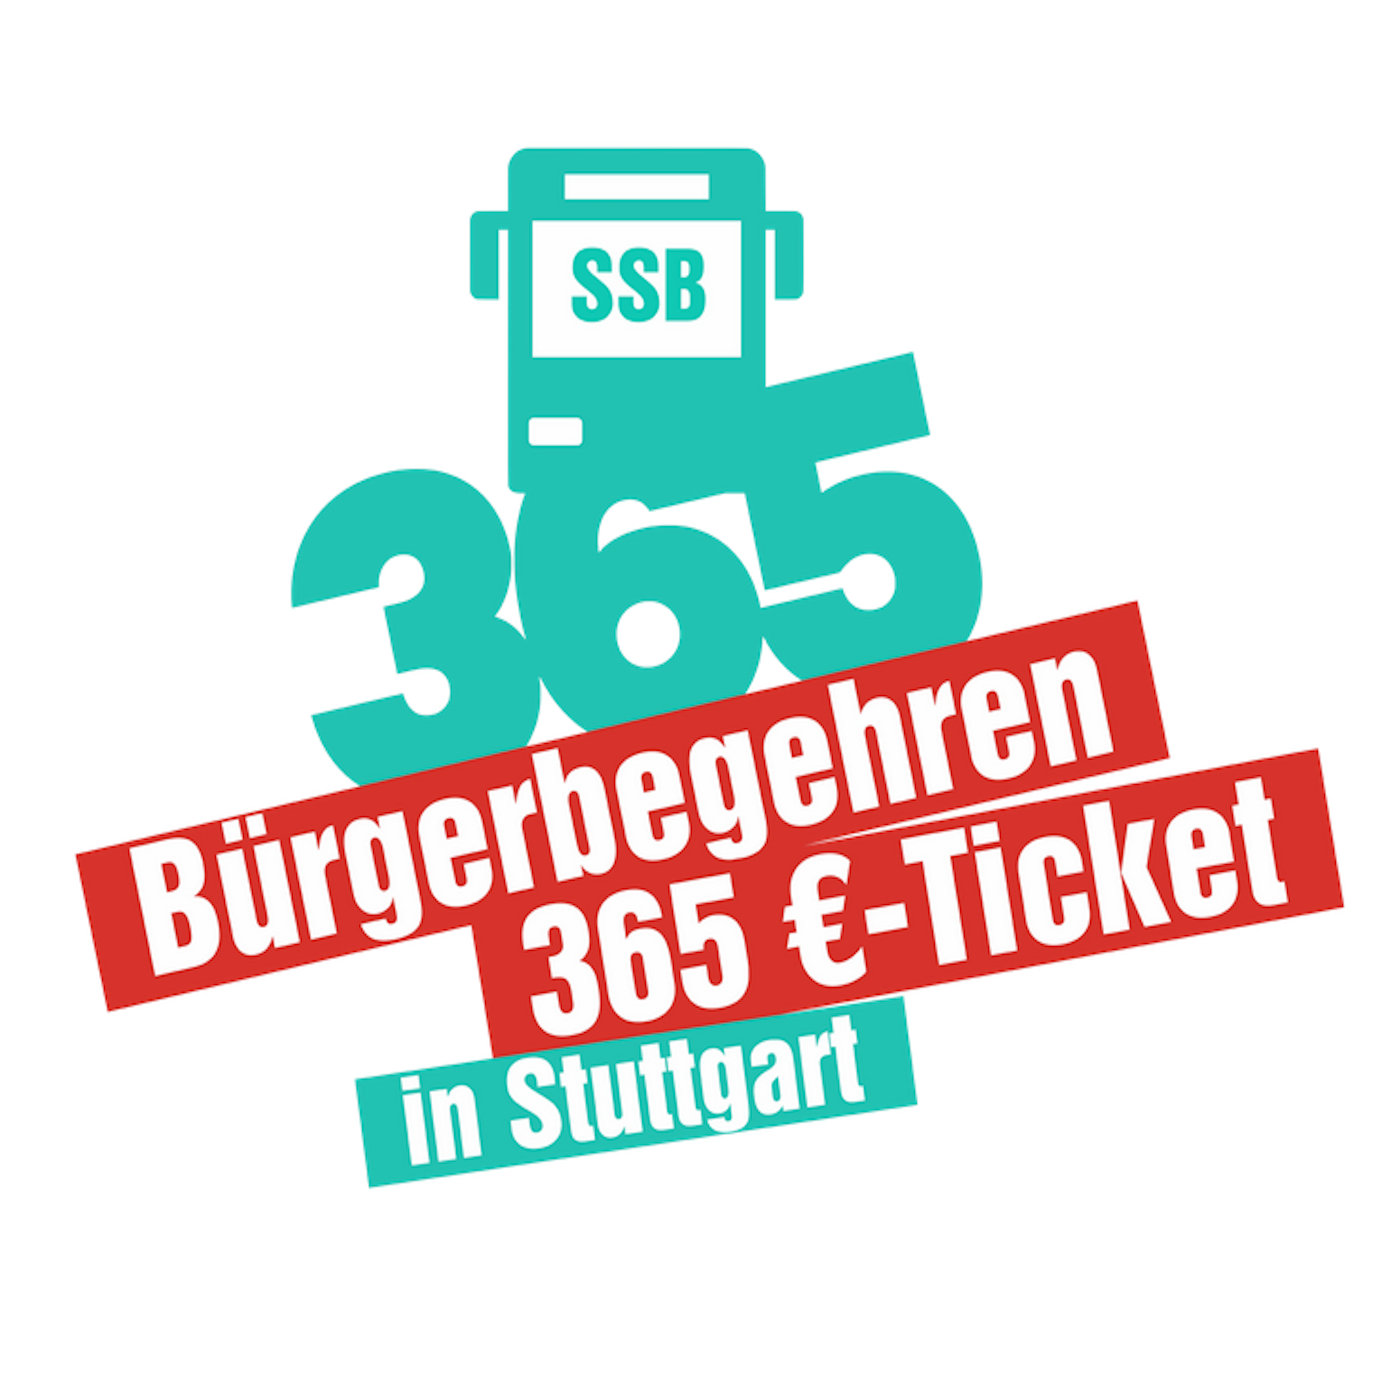 365 €-Ticket in Stuttgart, Interview zum Bürgerbegehren